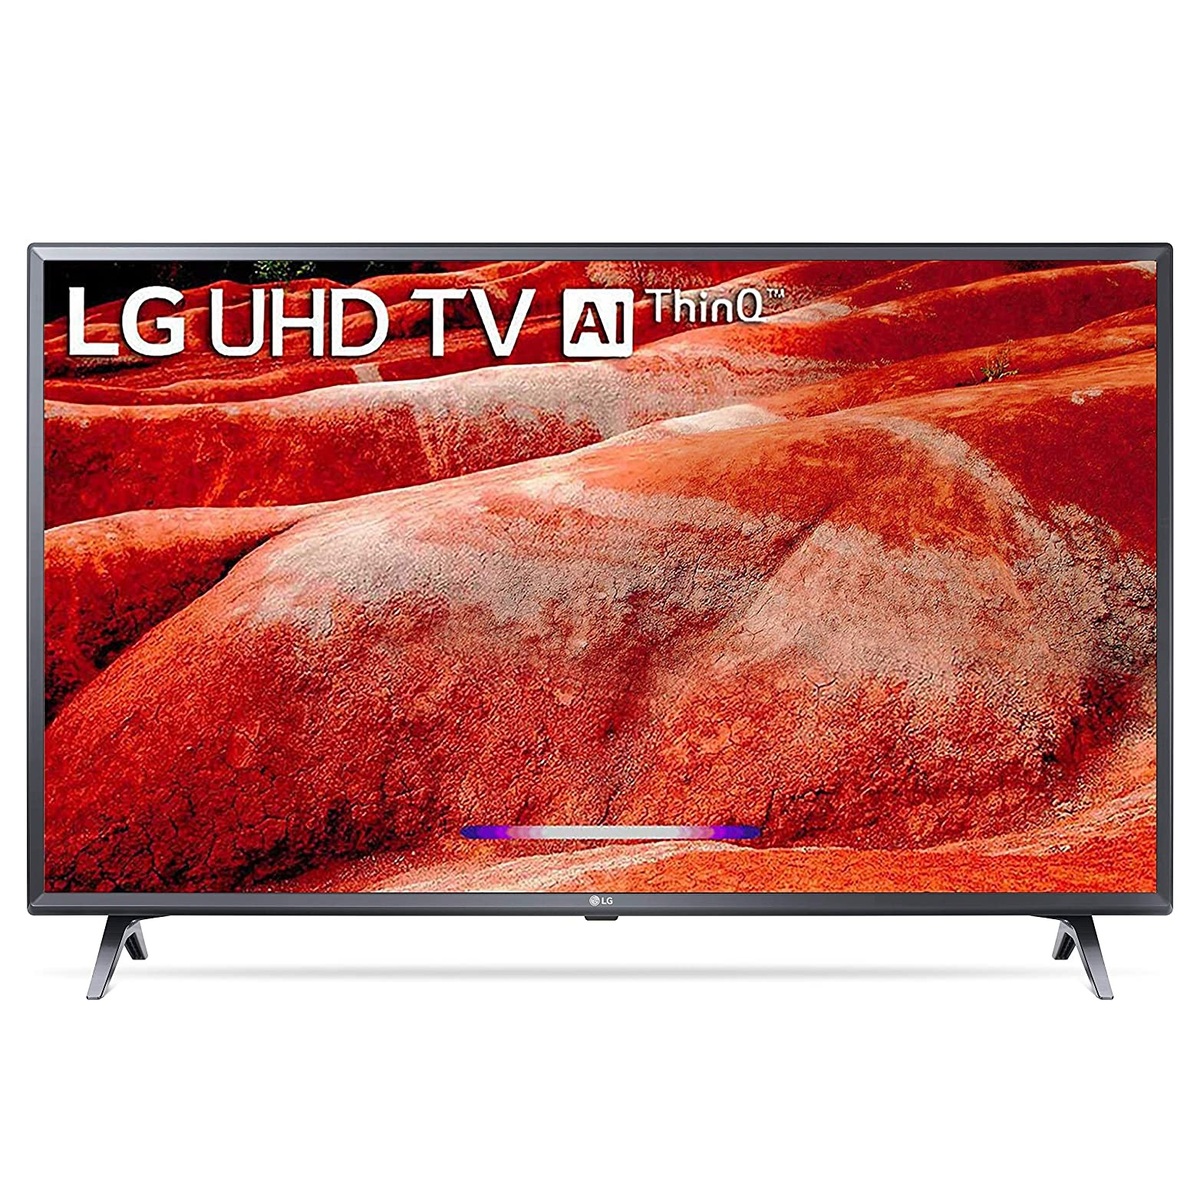 LG 4K Ultra HD LED Smart TV 43UM7780 43"